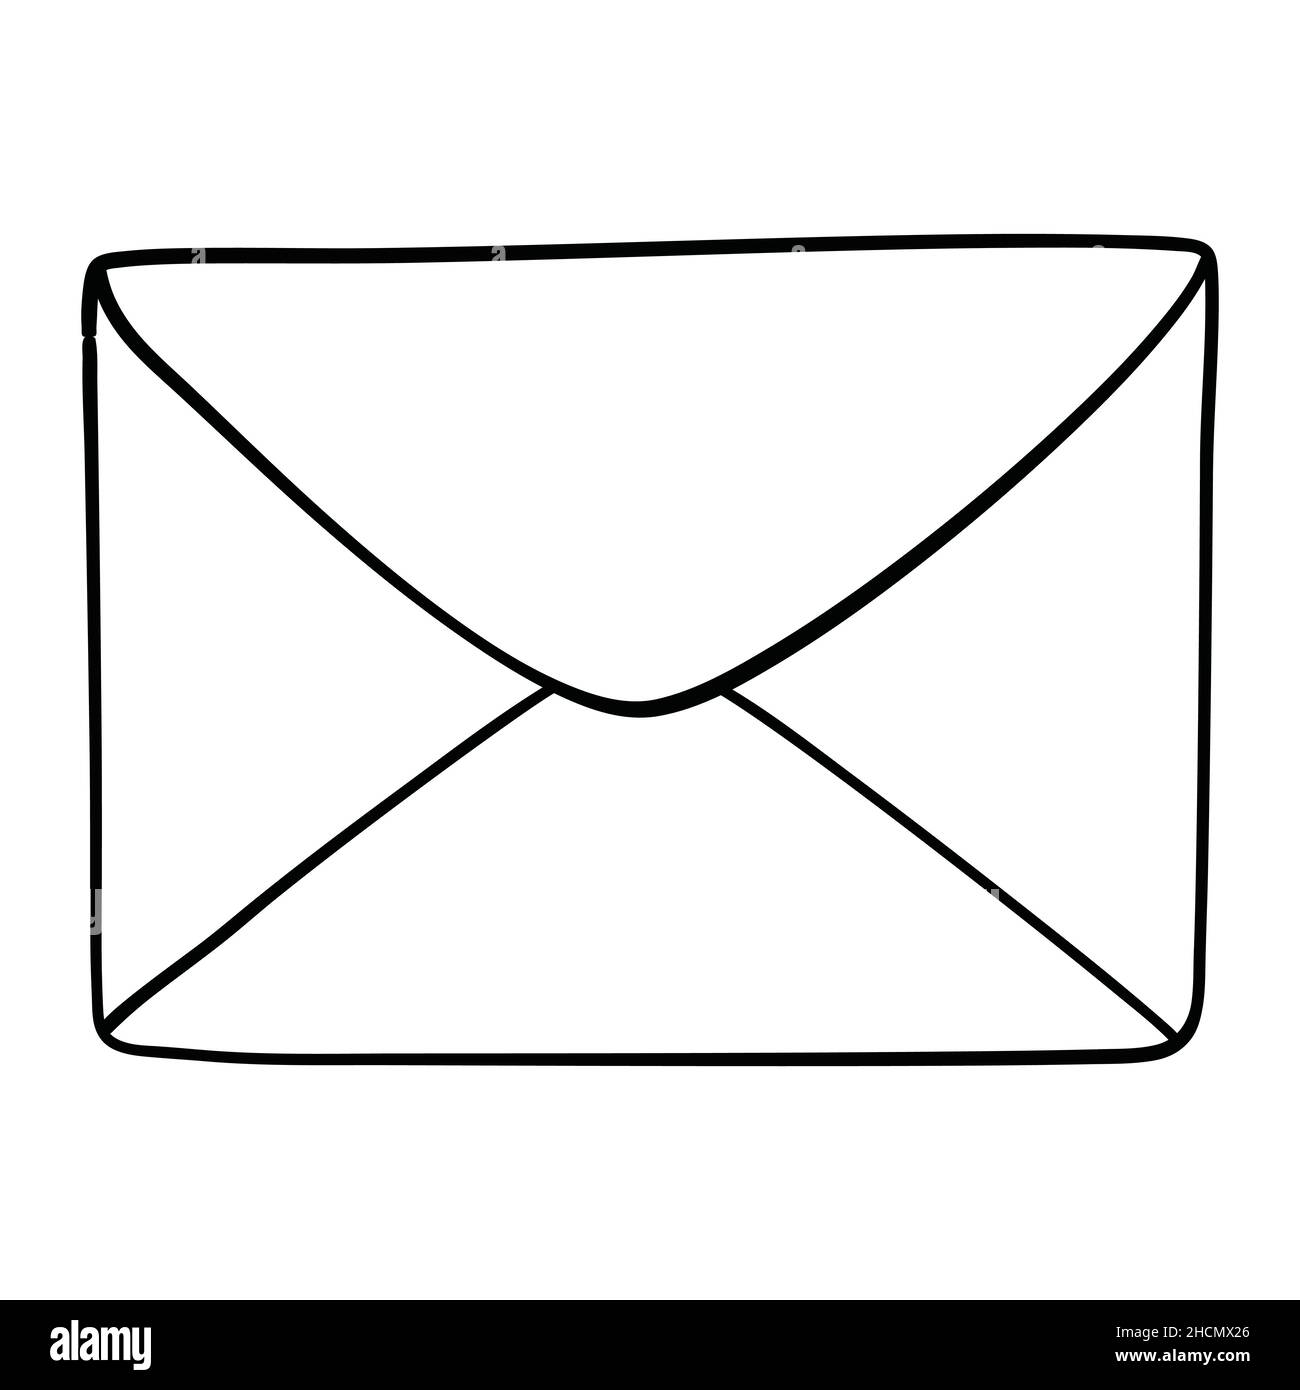 Envelope sketch icon Royalty Free Vector Image